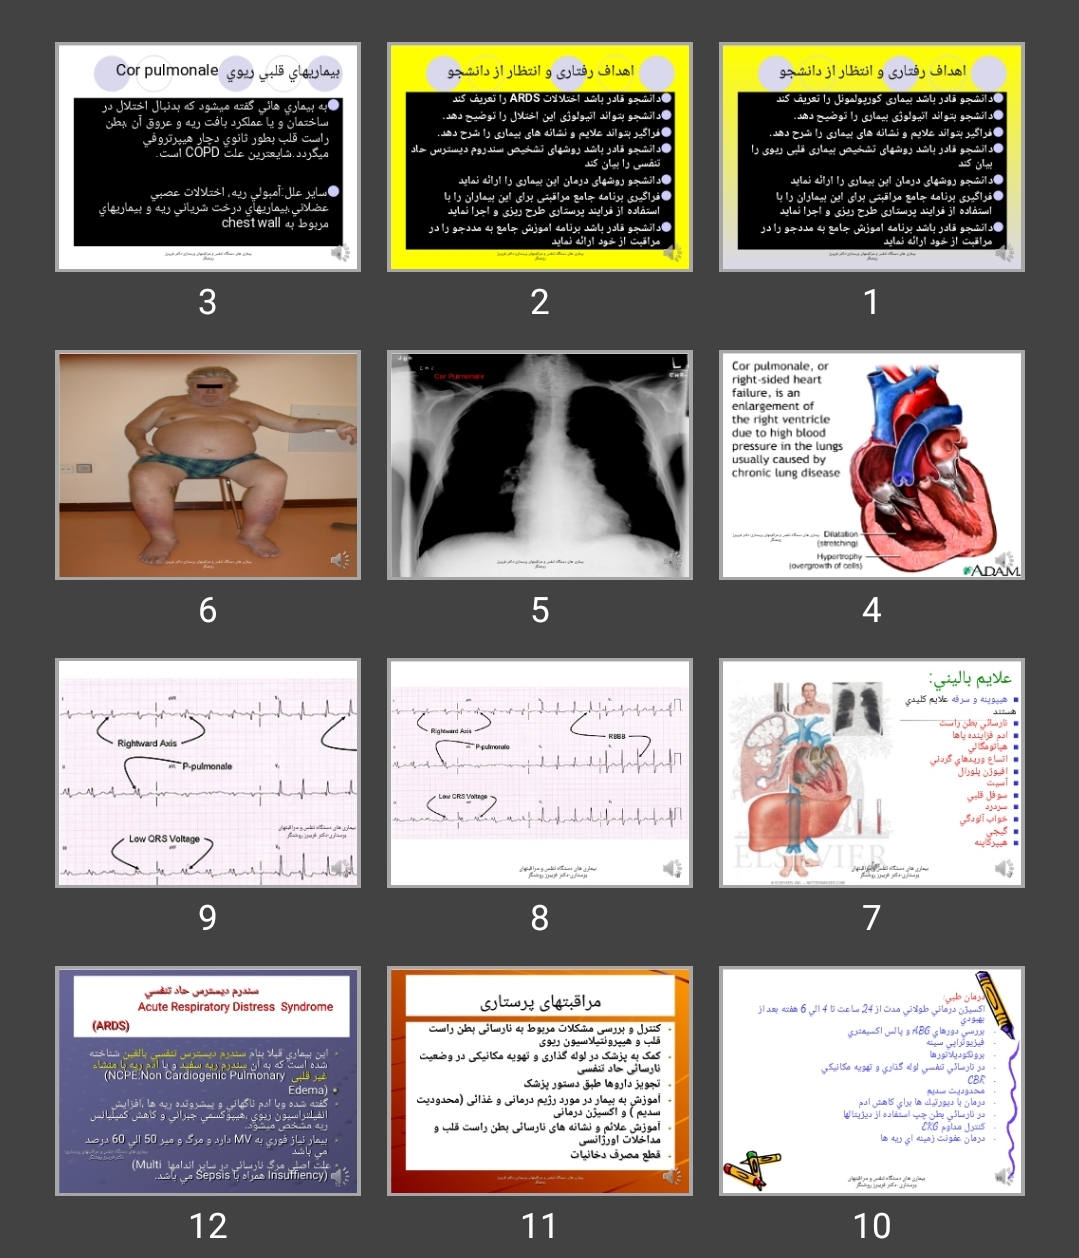 پاورپوینت Respiratory Diseases-Corpulmonale and ARDS